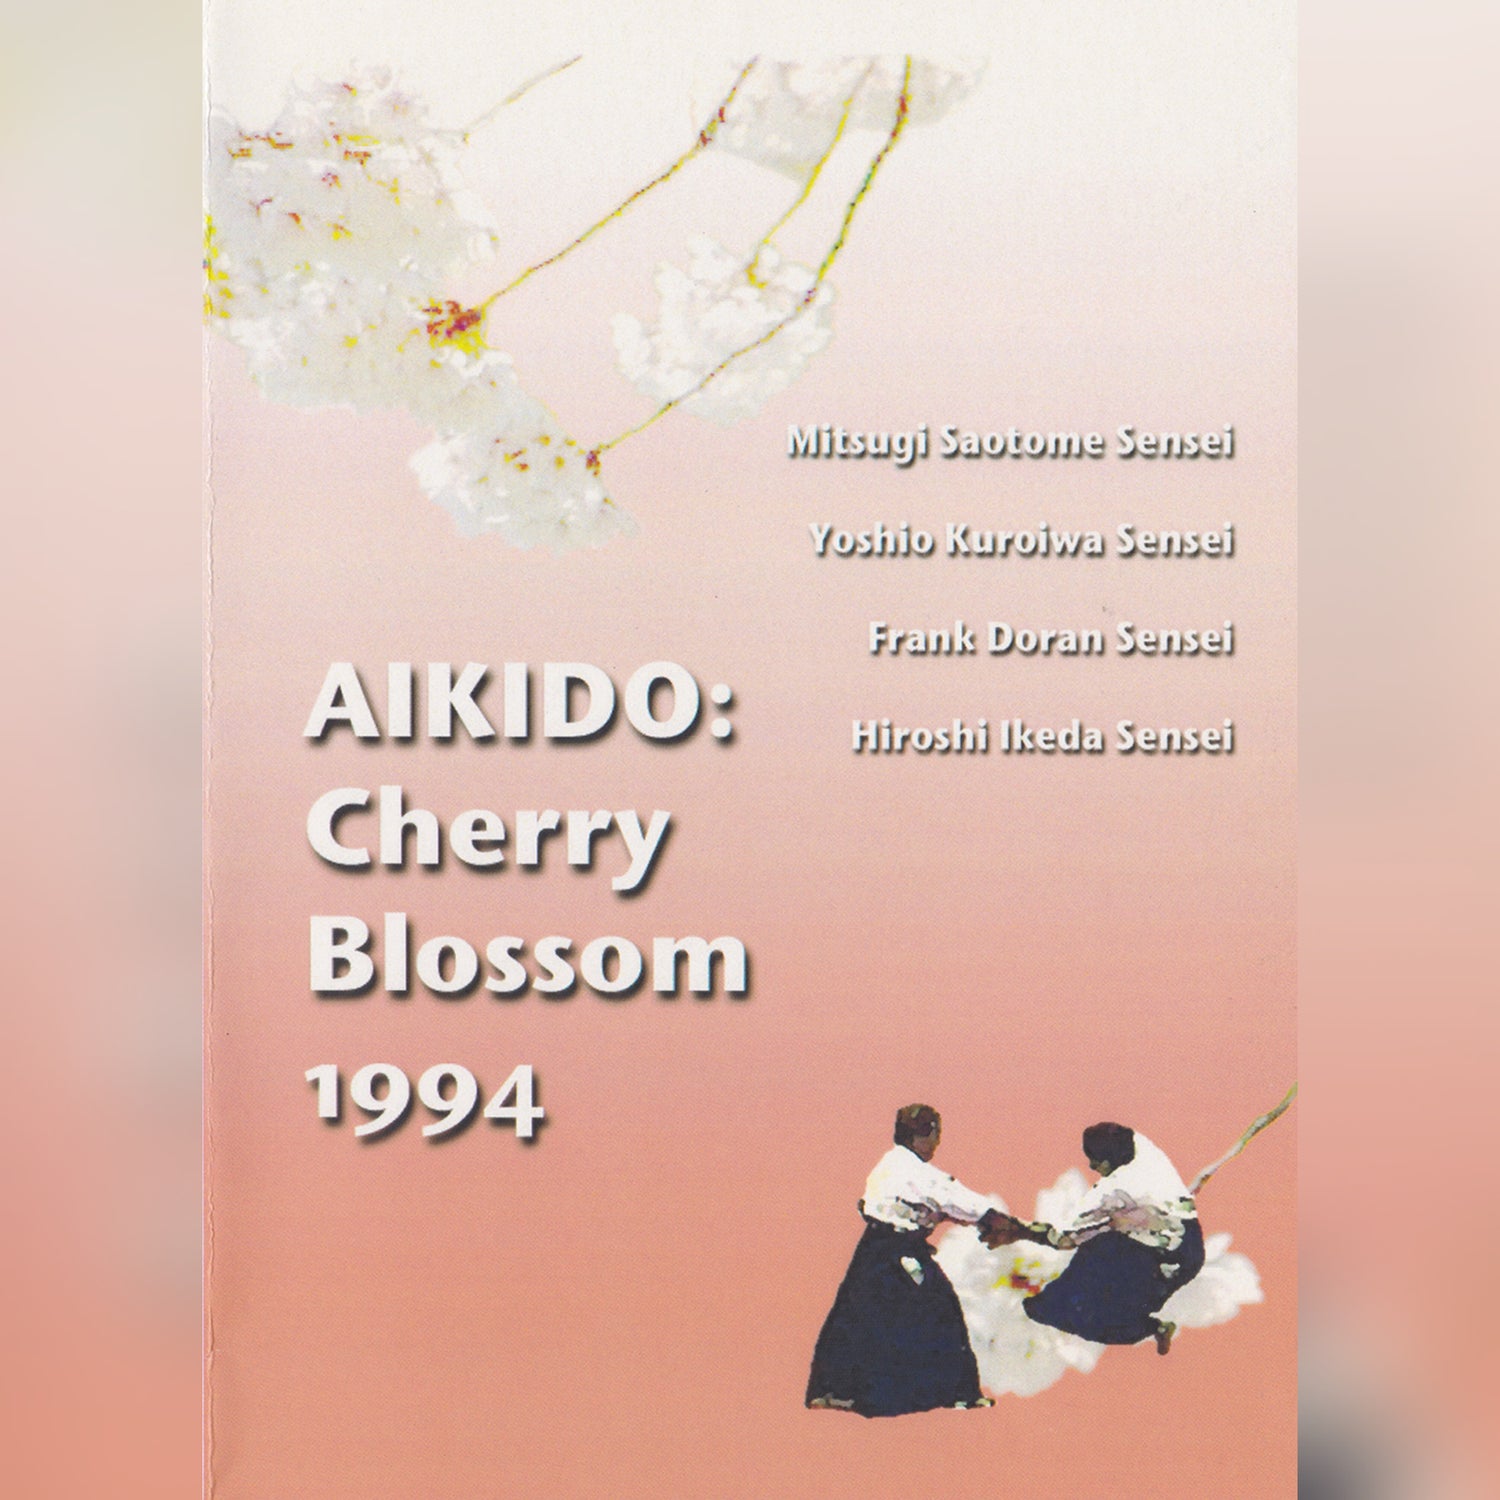 Aikido Cherry Blossom Festival (On Demand)